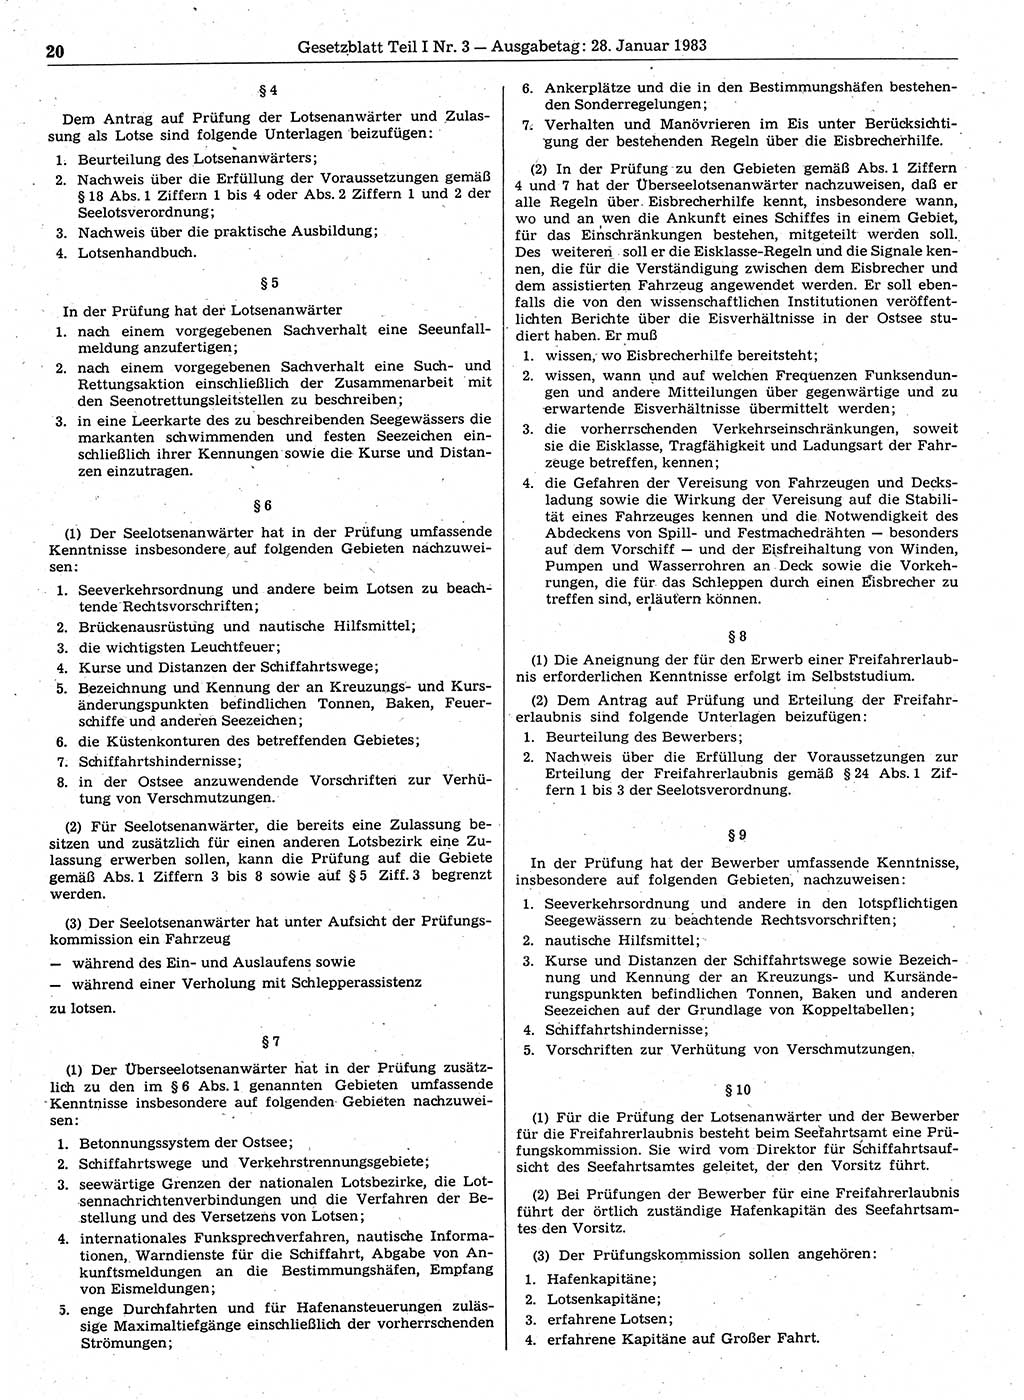 Gesetzblatt (GBl.) der Deutschen Demokratischen Republik (DDR) Teil Ⅰ 1983, Seite 20 (GBl. DDR Ⅰ 1983, S. 20)